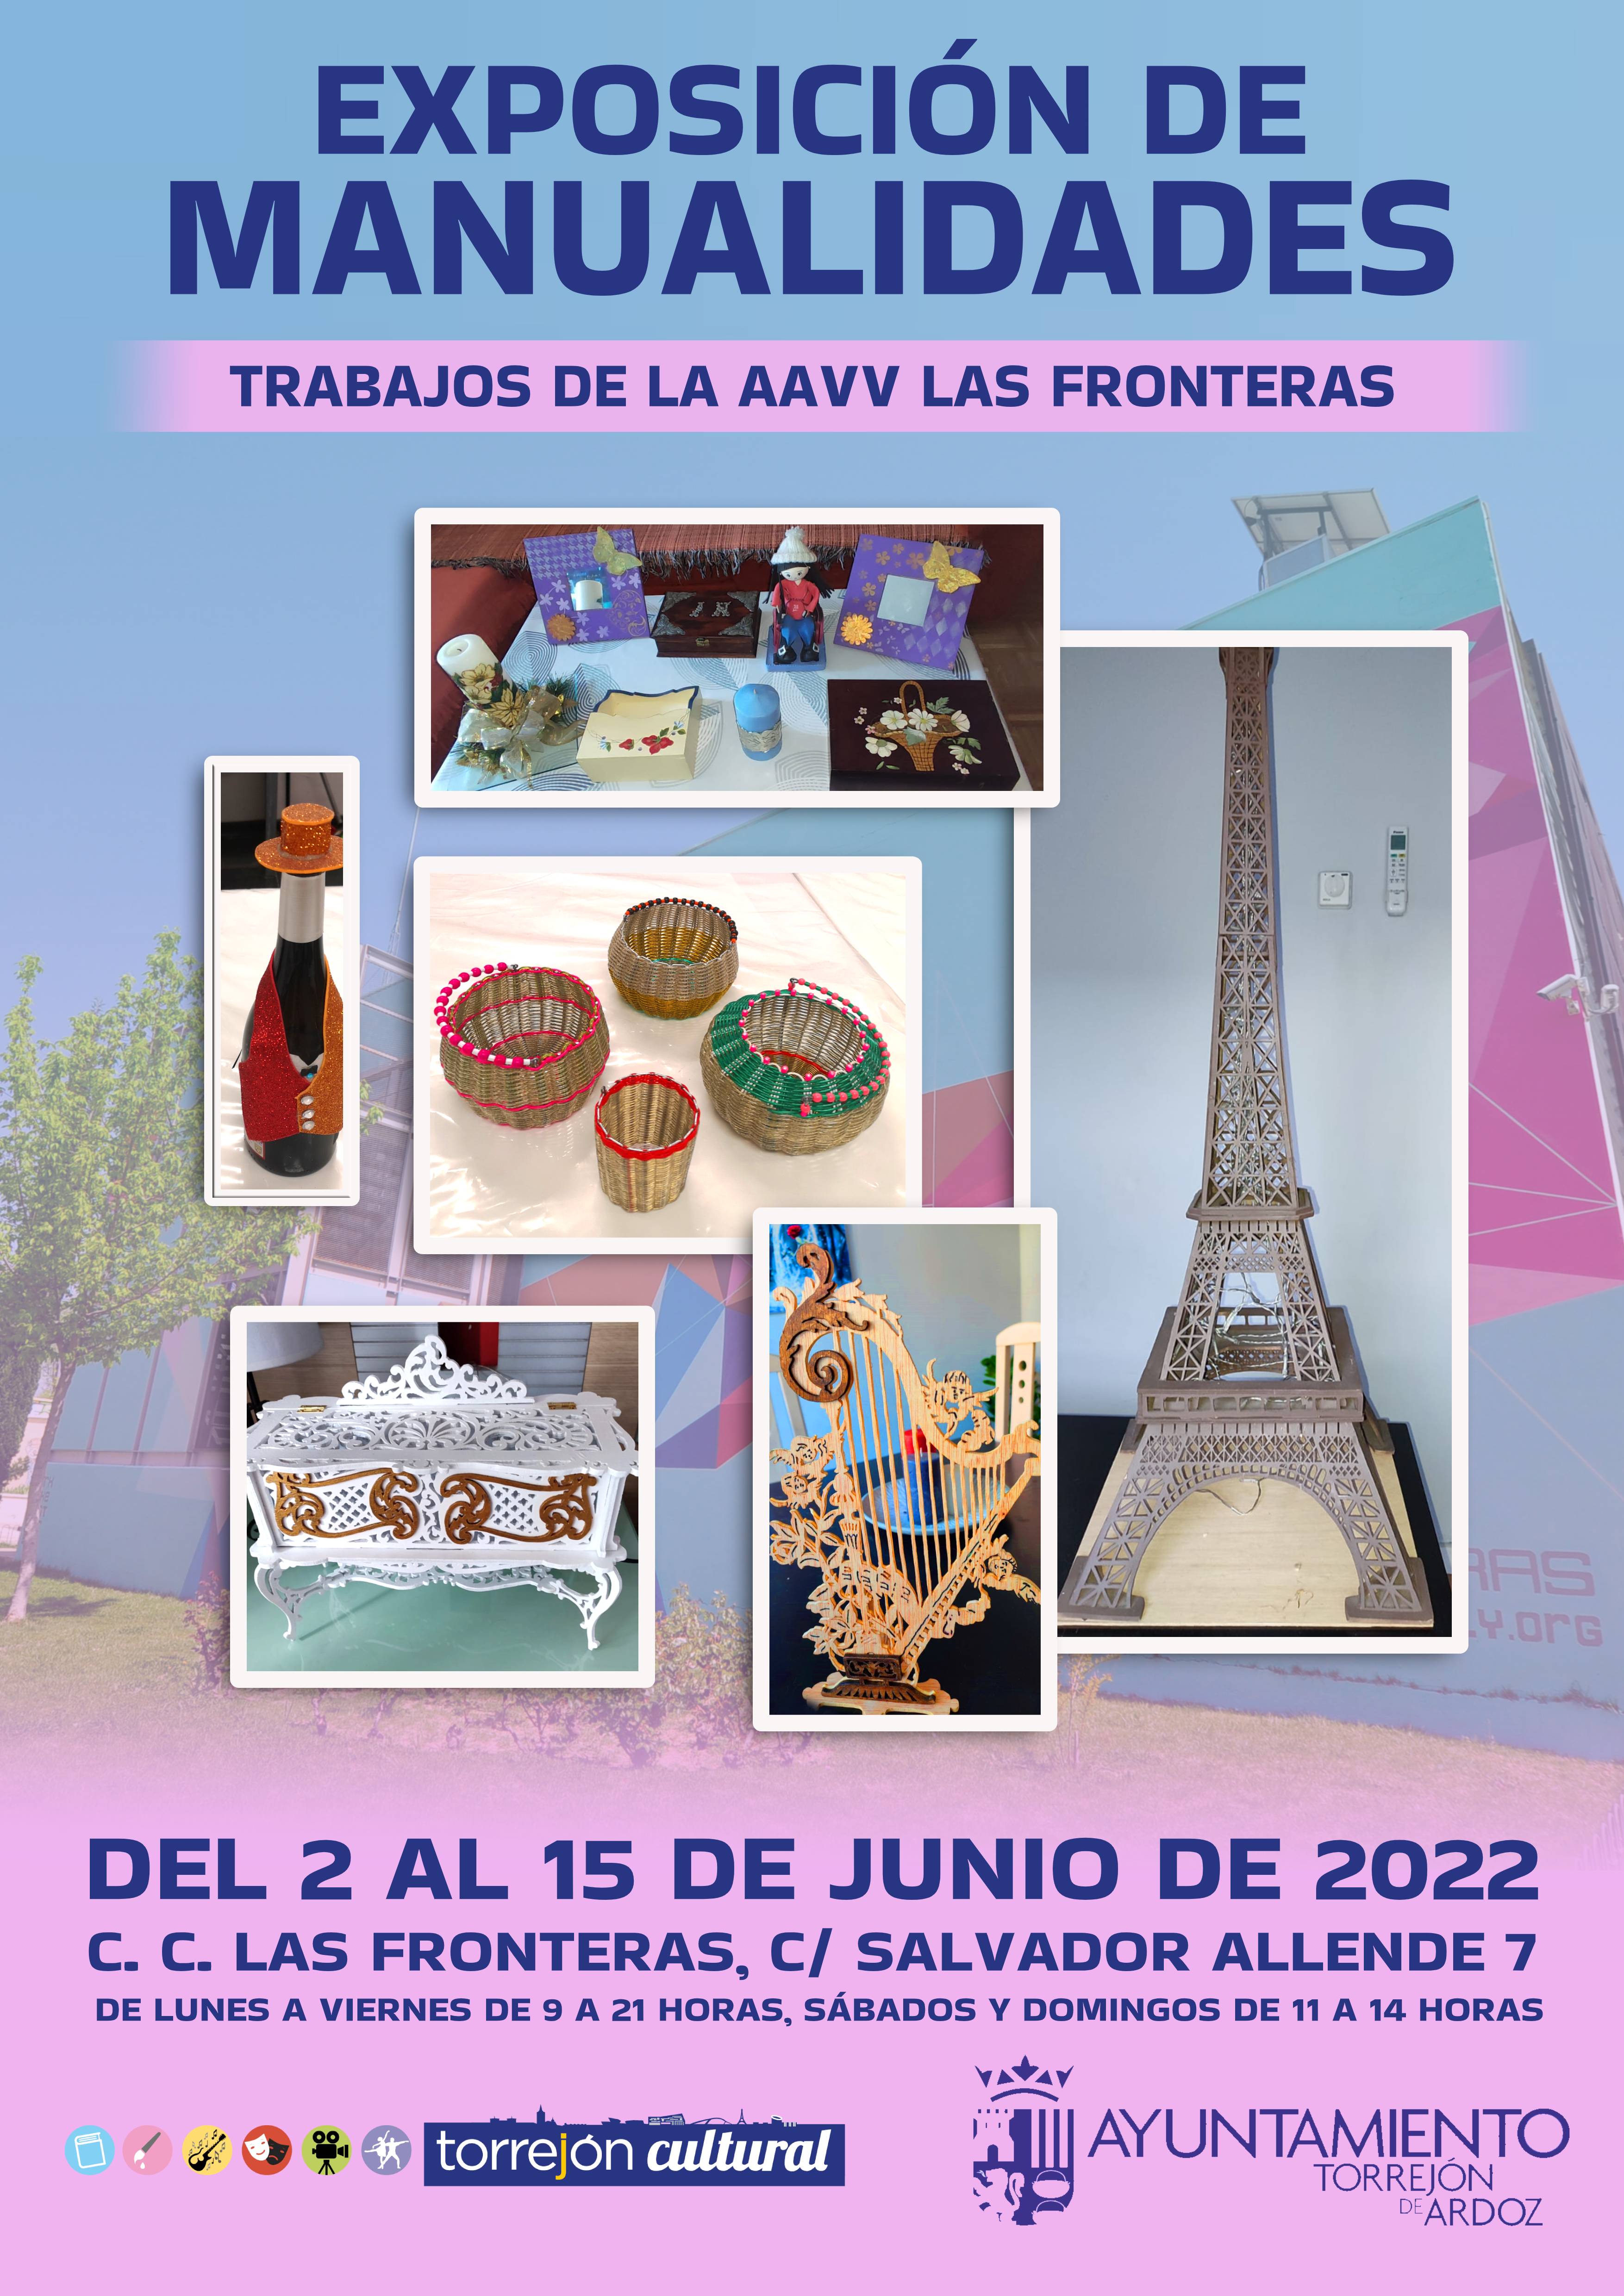 Exposición de manualidades AAVV Las Fronteras